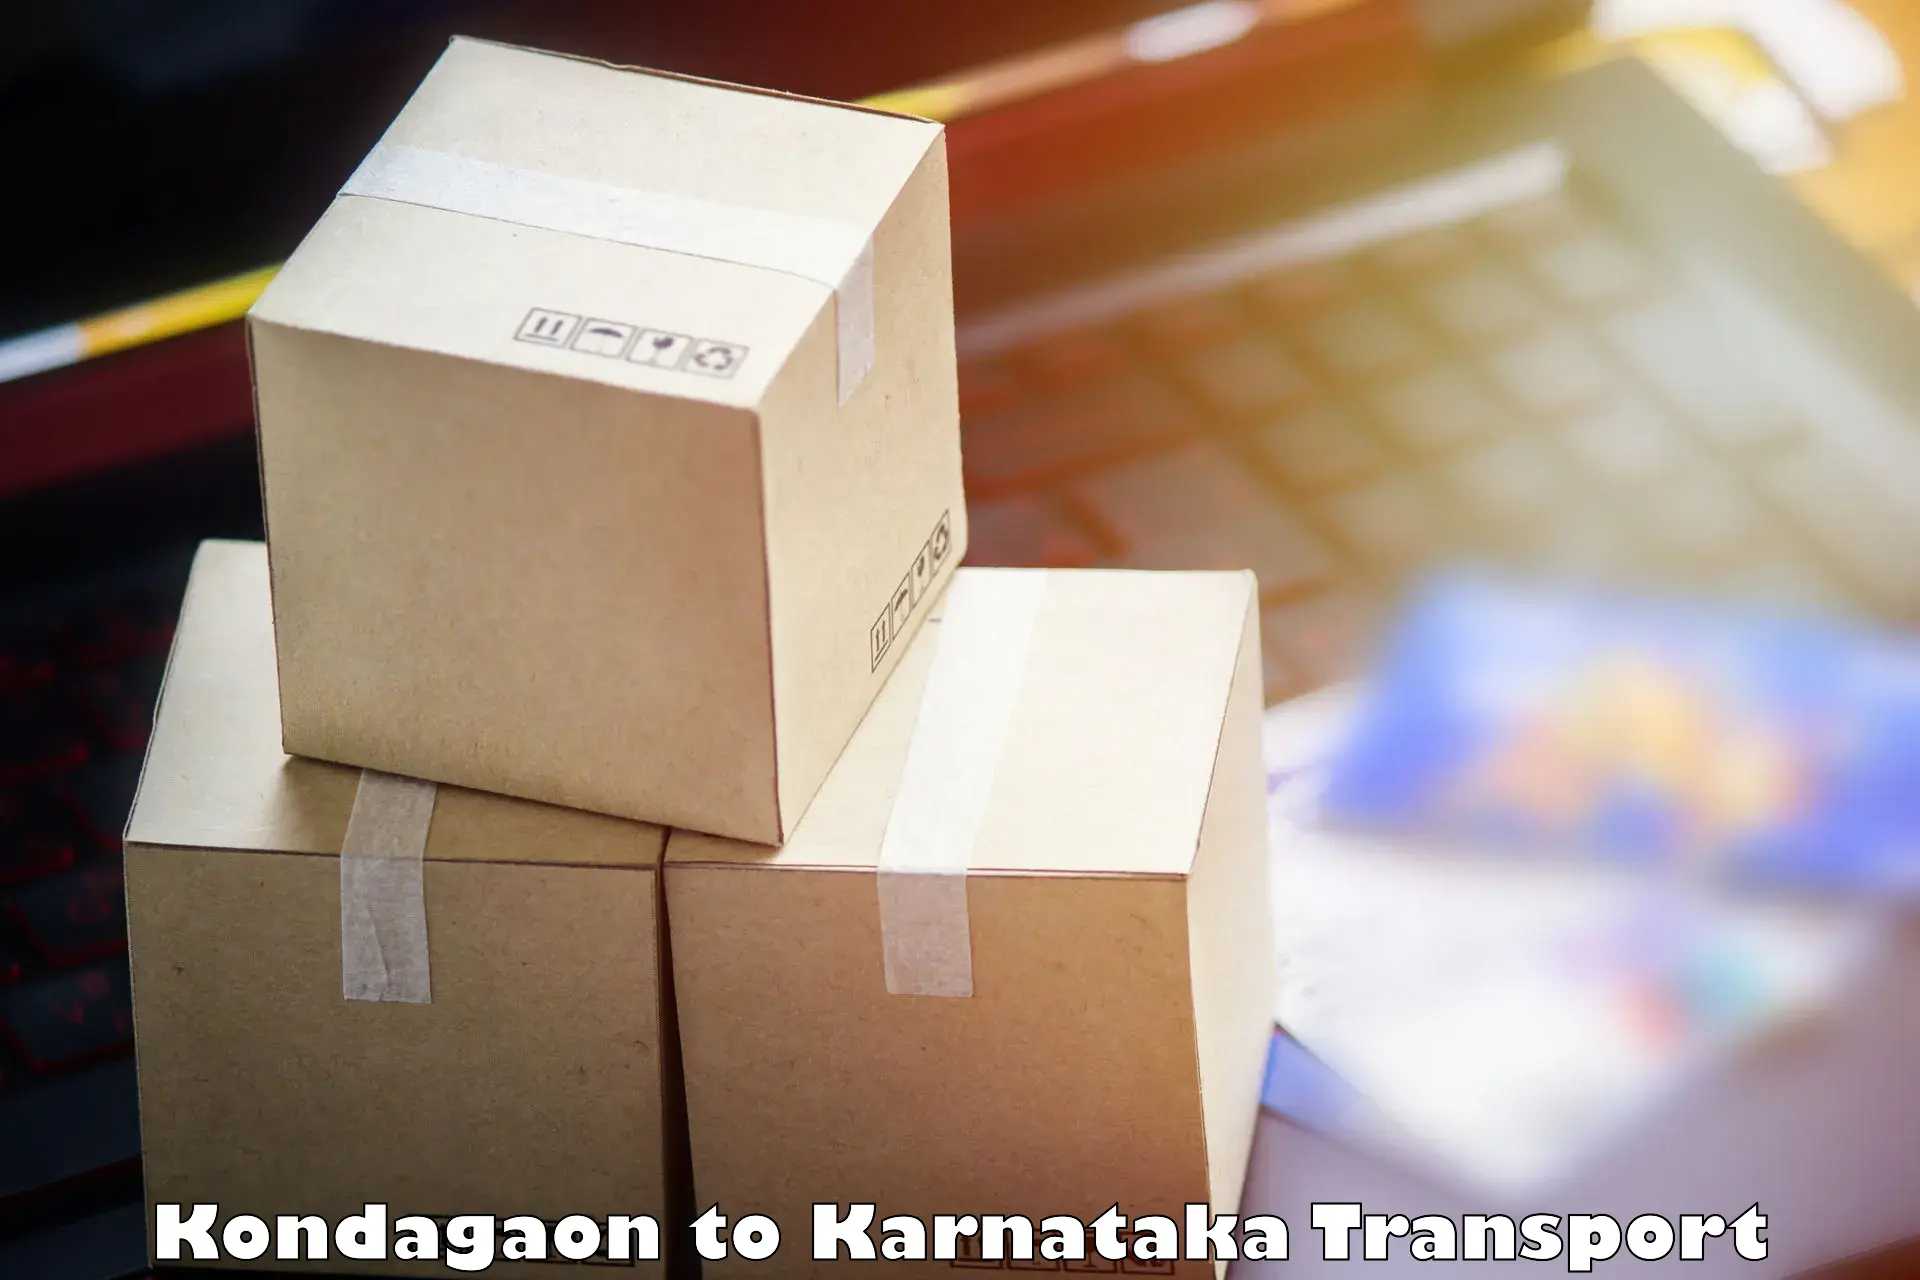 Cargo transport services Kondagaon to Mundgod